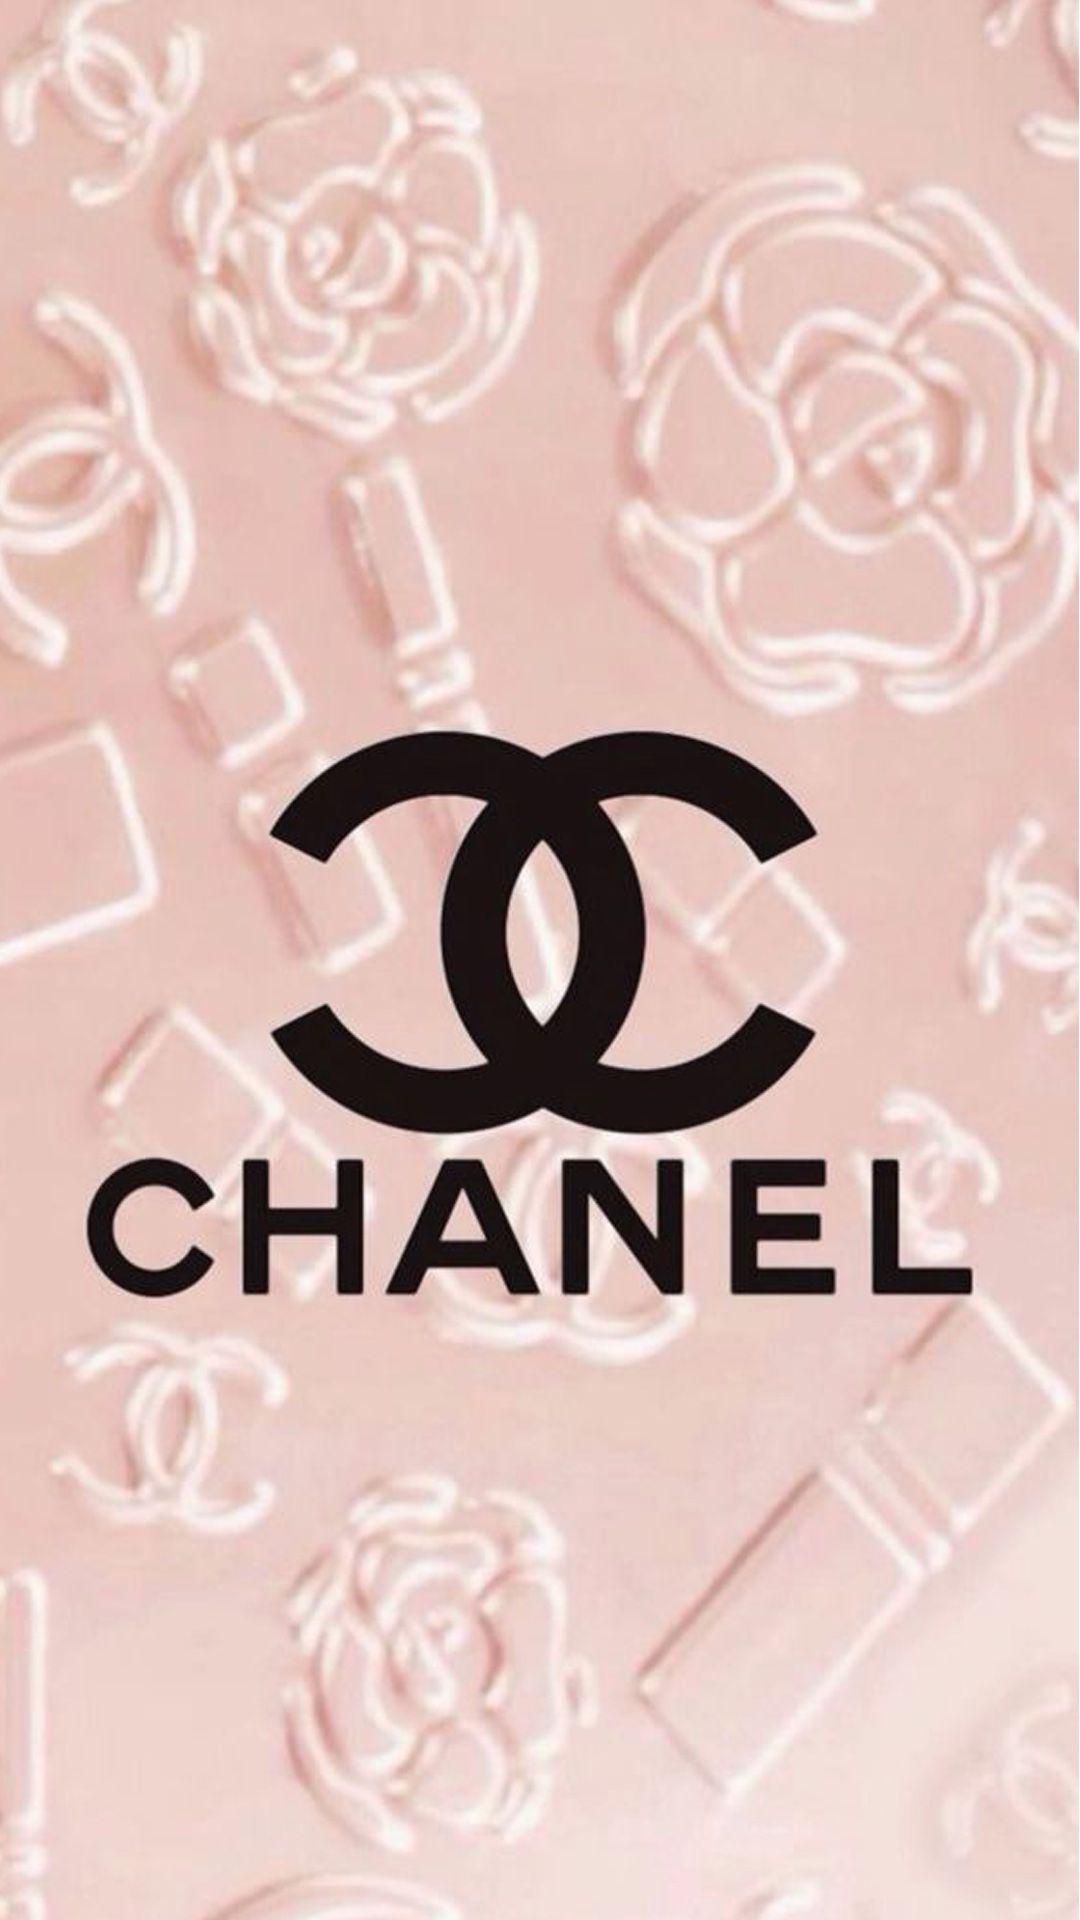 Coco Chanel - một biểu tượng của sự thanh lịch, tinh tế và sáng tạo. Hãy khám phá những bí quyết và câu truyện đằng sau những tác phẩm nghệ thuật của bà, cũng như cảm nhận những giá trị thiết thực và sâu sắc mà bà truyền tải. Điều này sẽ giúp bạn hiểu rõ hơn về vẻ đẹp và phong cách thời trang độc đáo của Chanel.